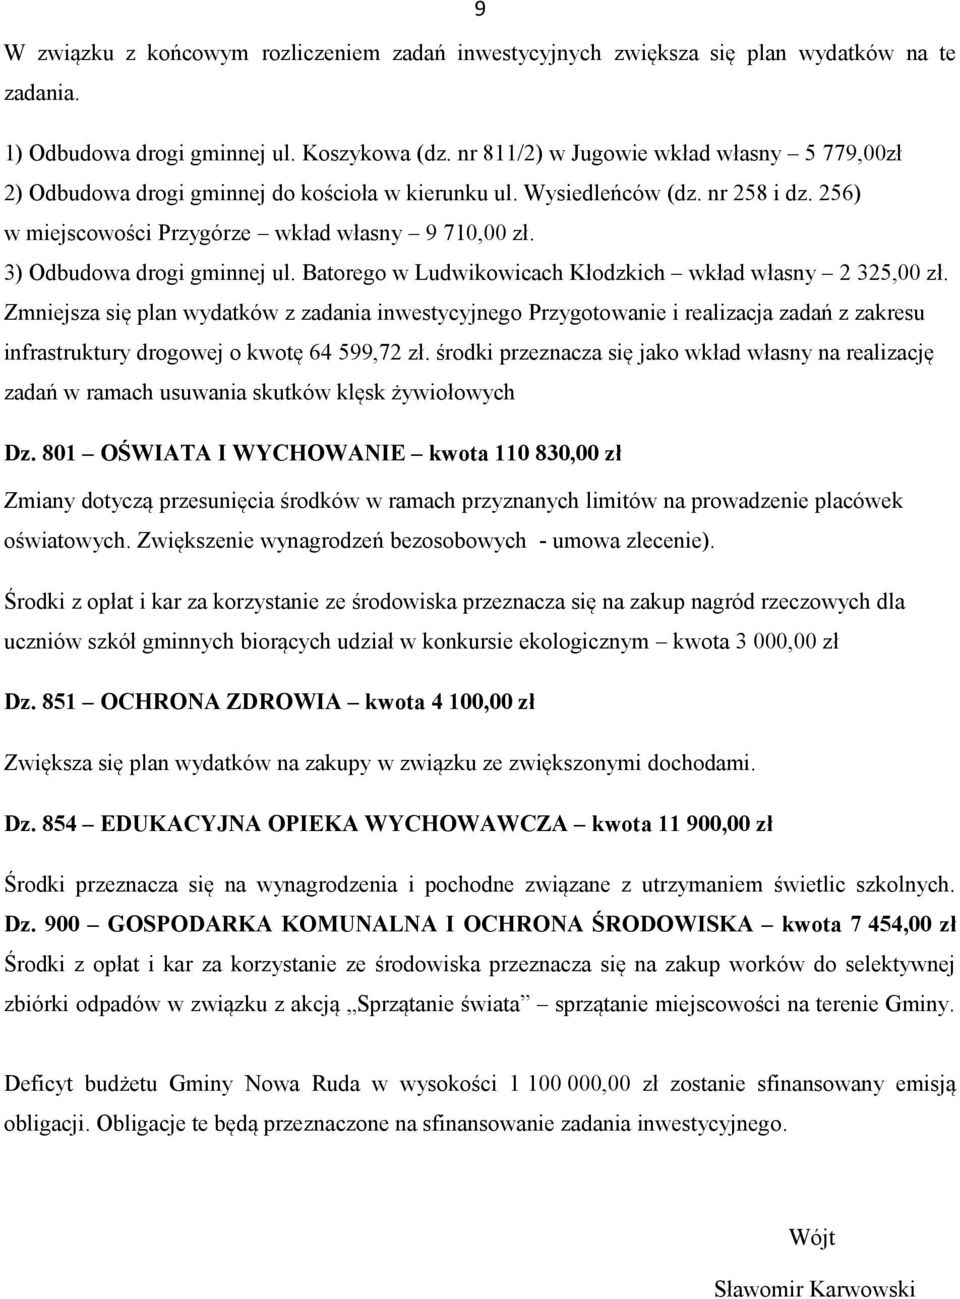 3) Odbudowa drogi gminnej ul. Batorego w Ludwikowicach Kłodzkich wkład własny 2 325,00 zł.